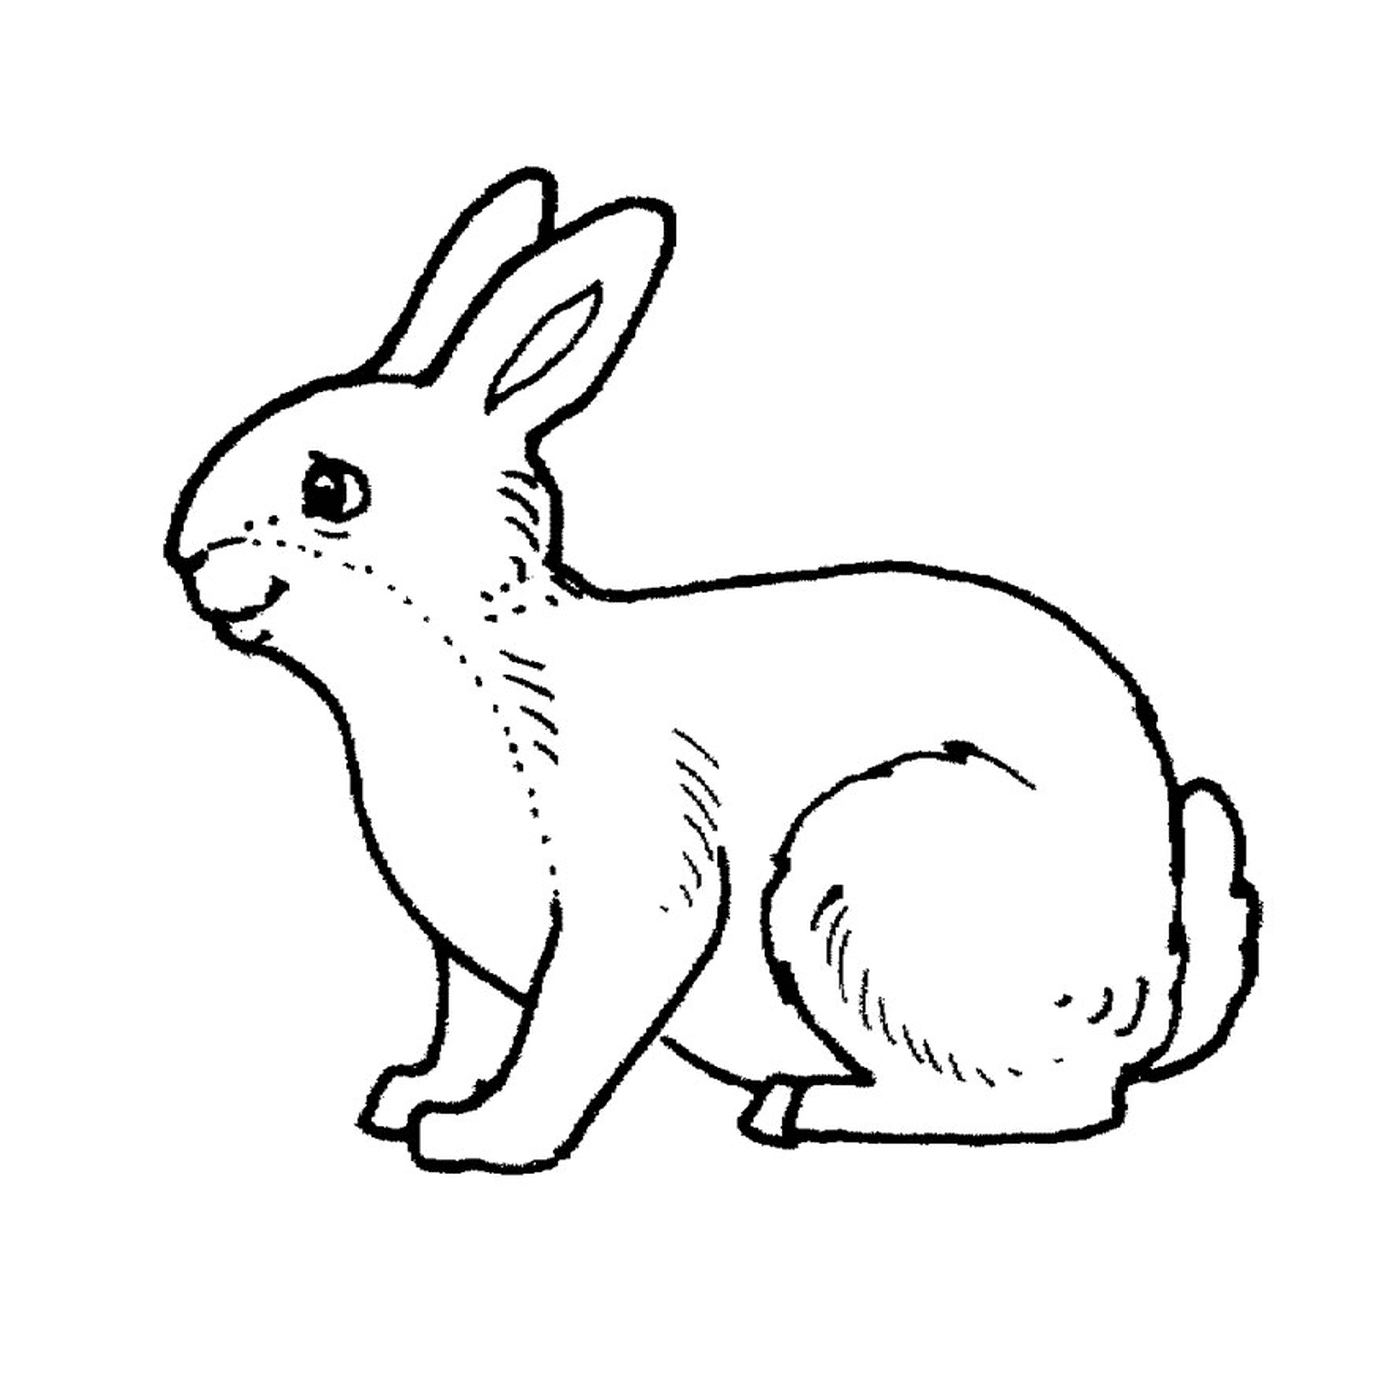  A rabbit 